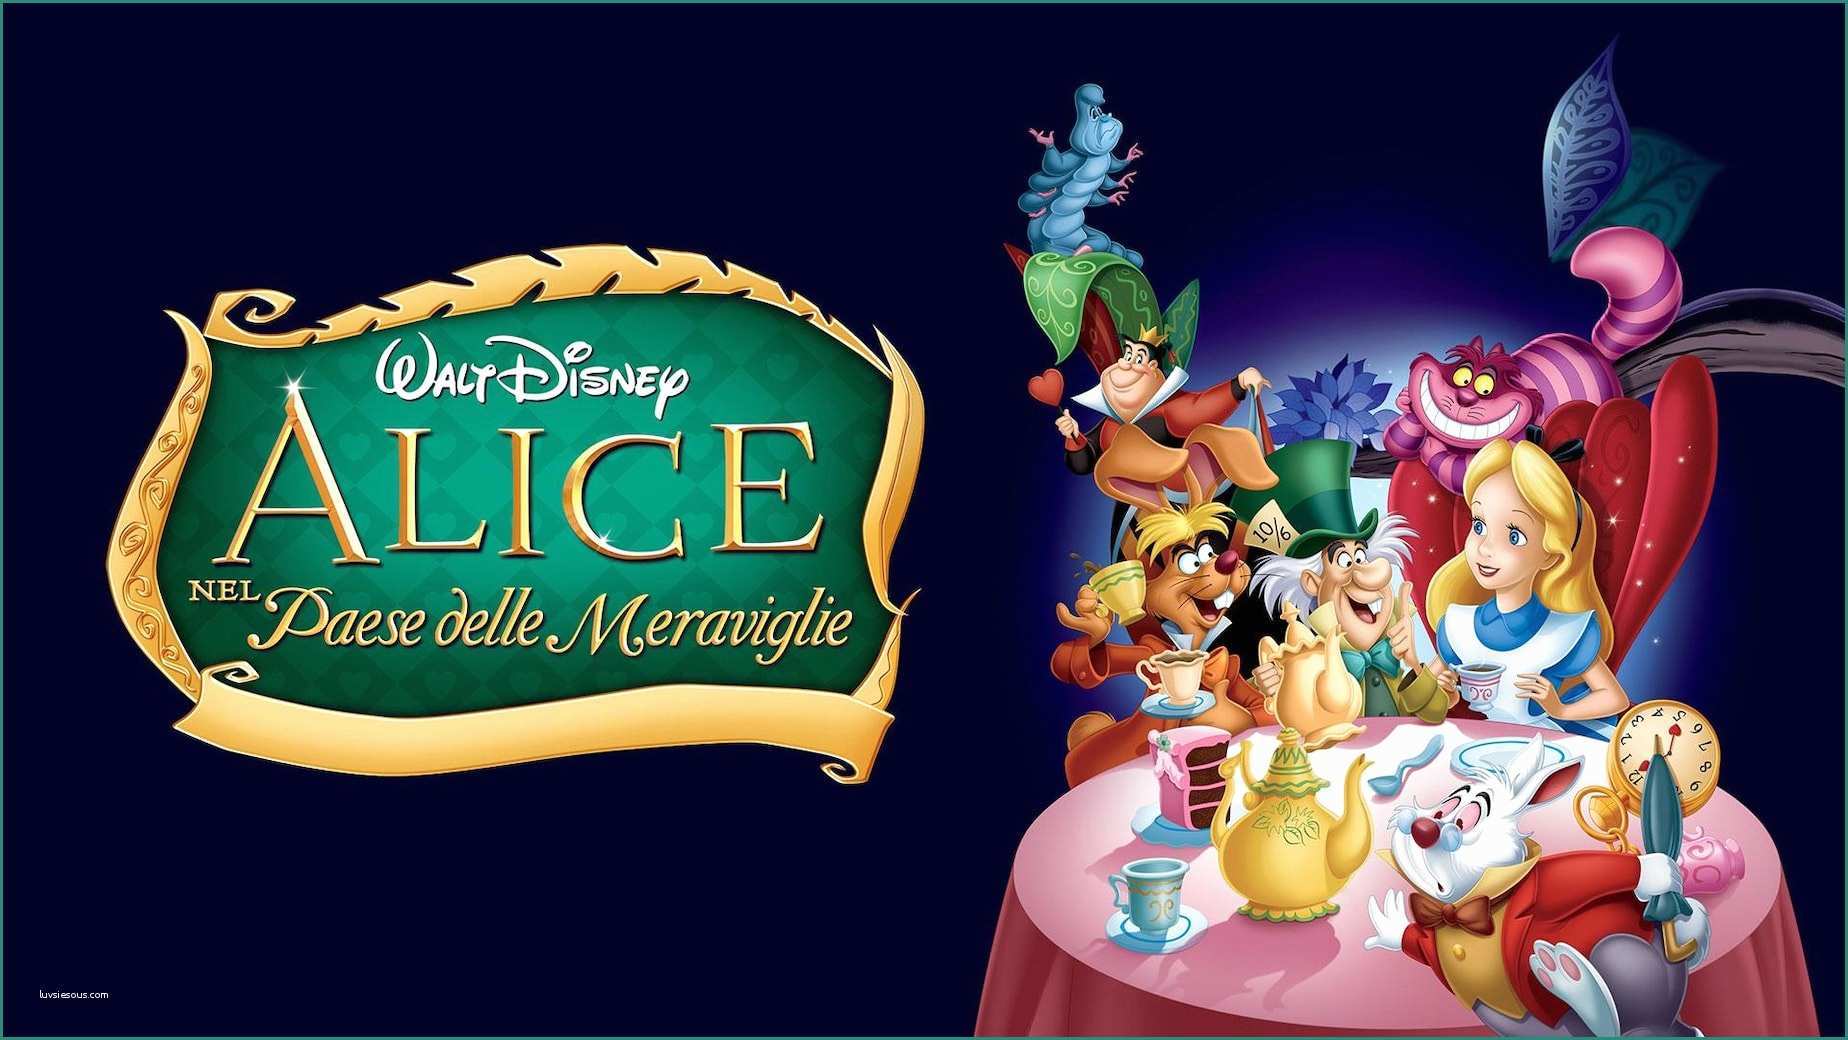 Immagini Disney Da Scaricare E Alice Nel Paese Delle Meraviglie Streaming Guarda Subito In Hd Chili